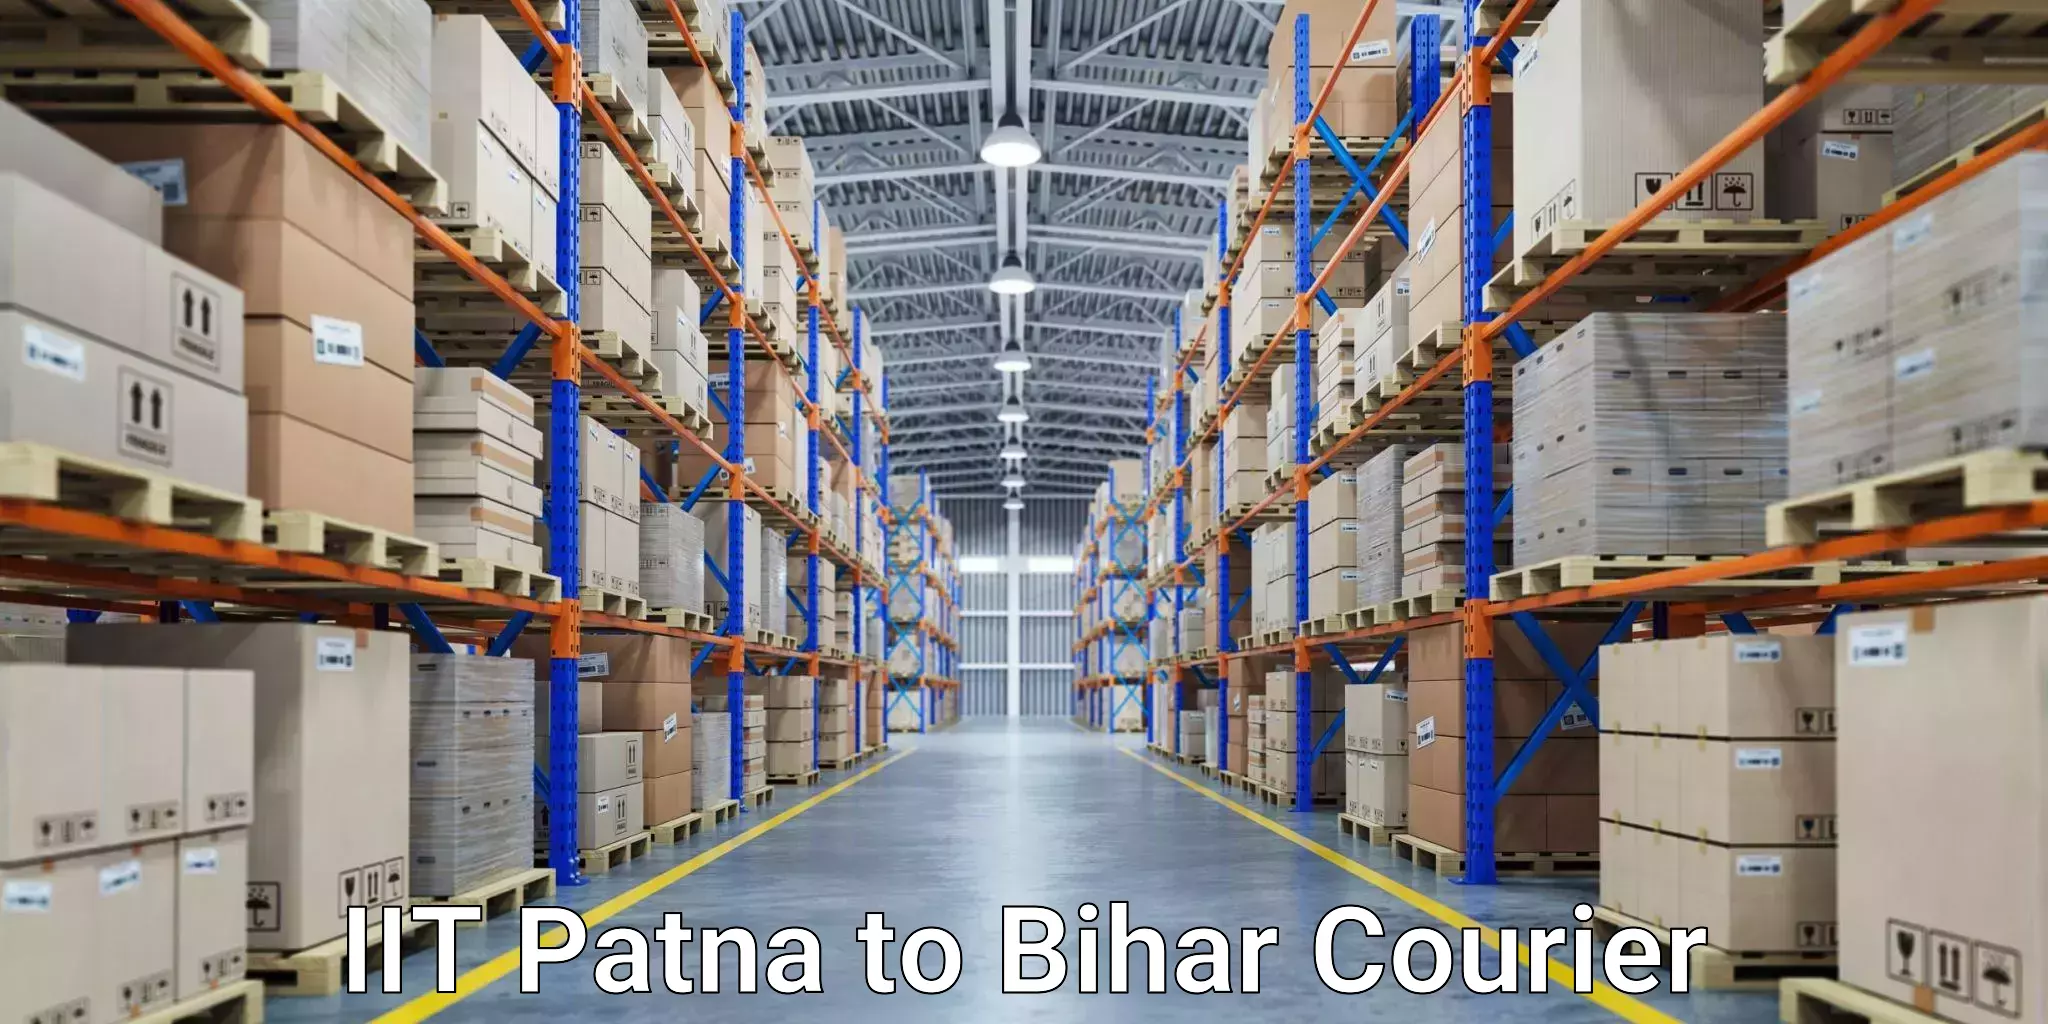 Express courier facilities IIT Patna to Bihar